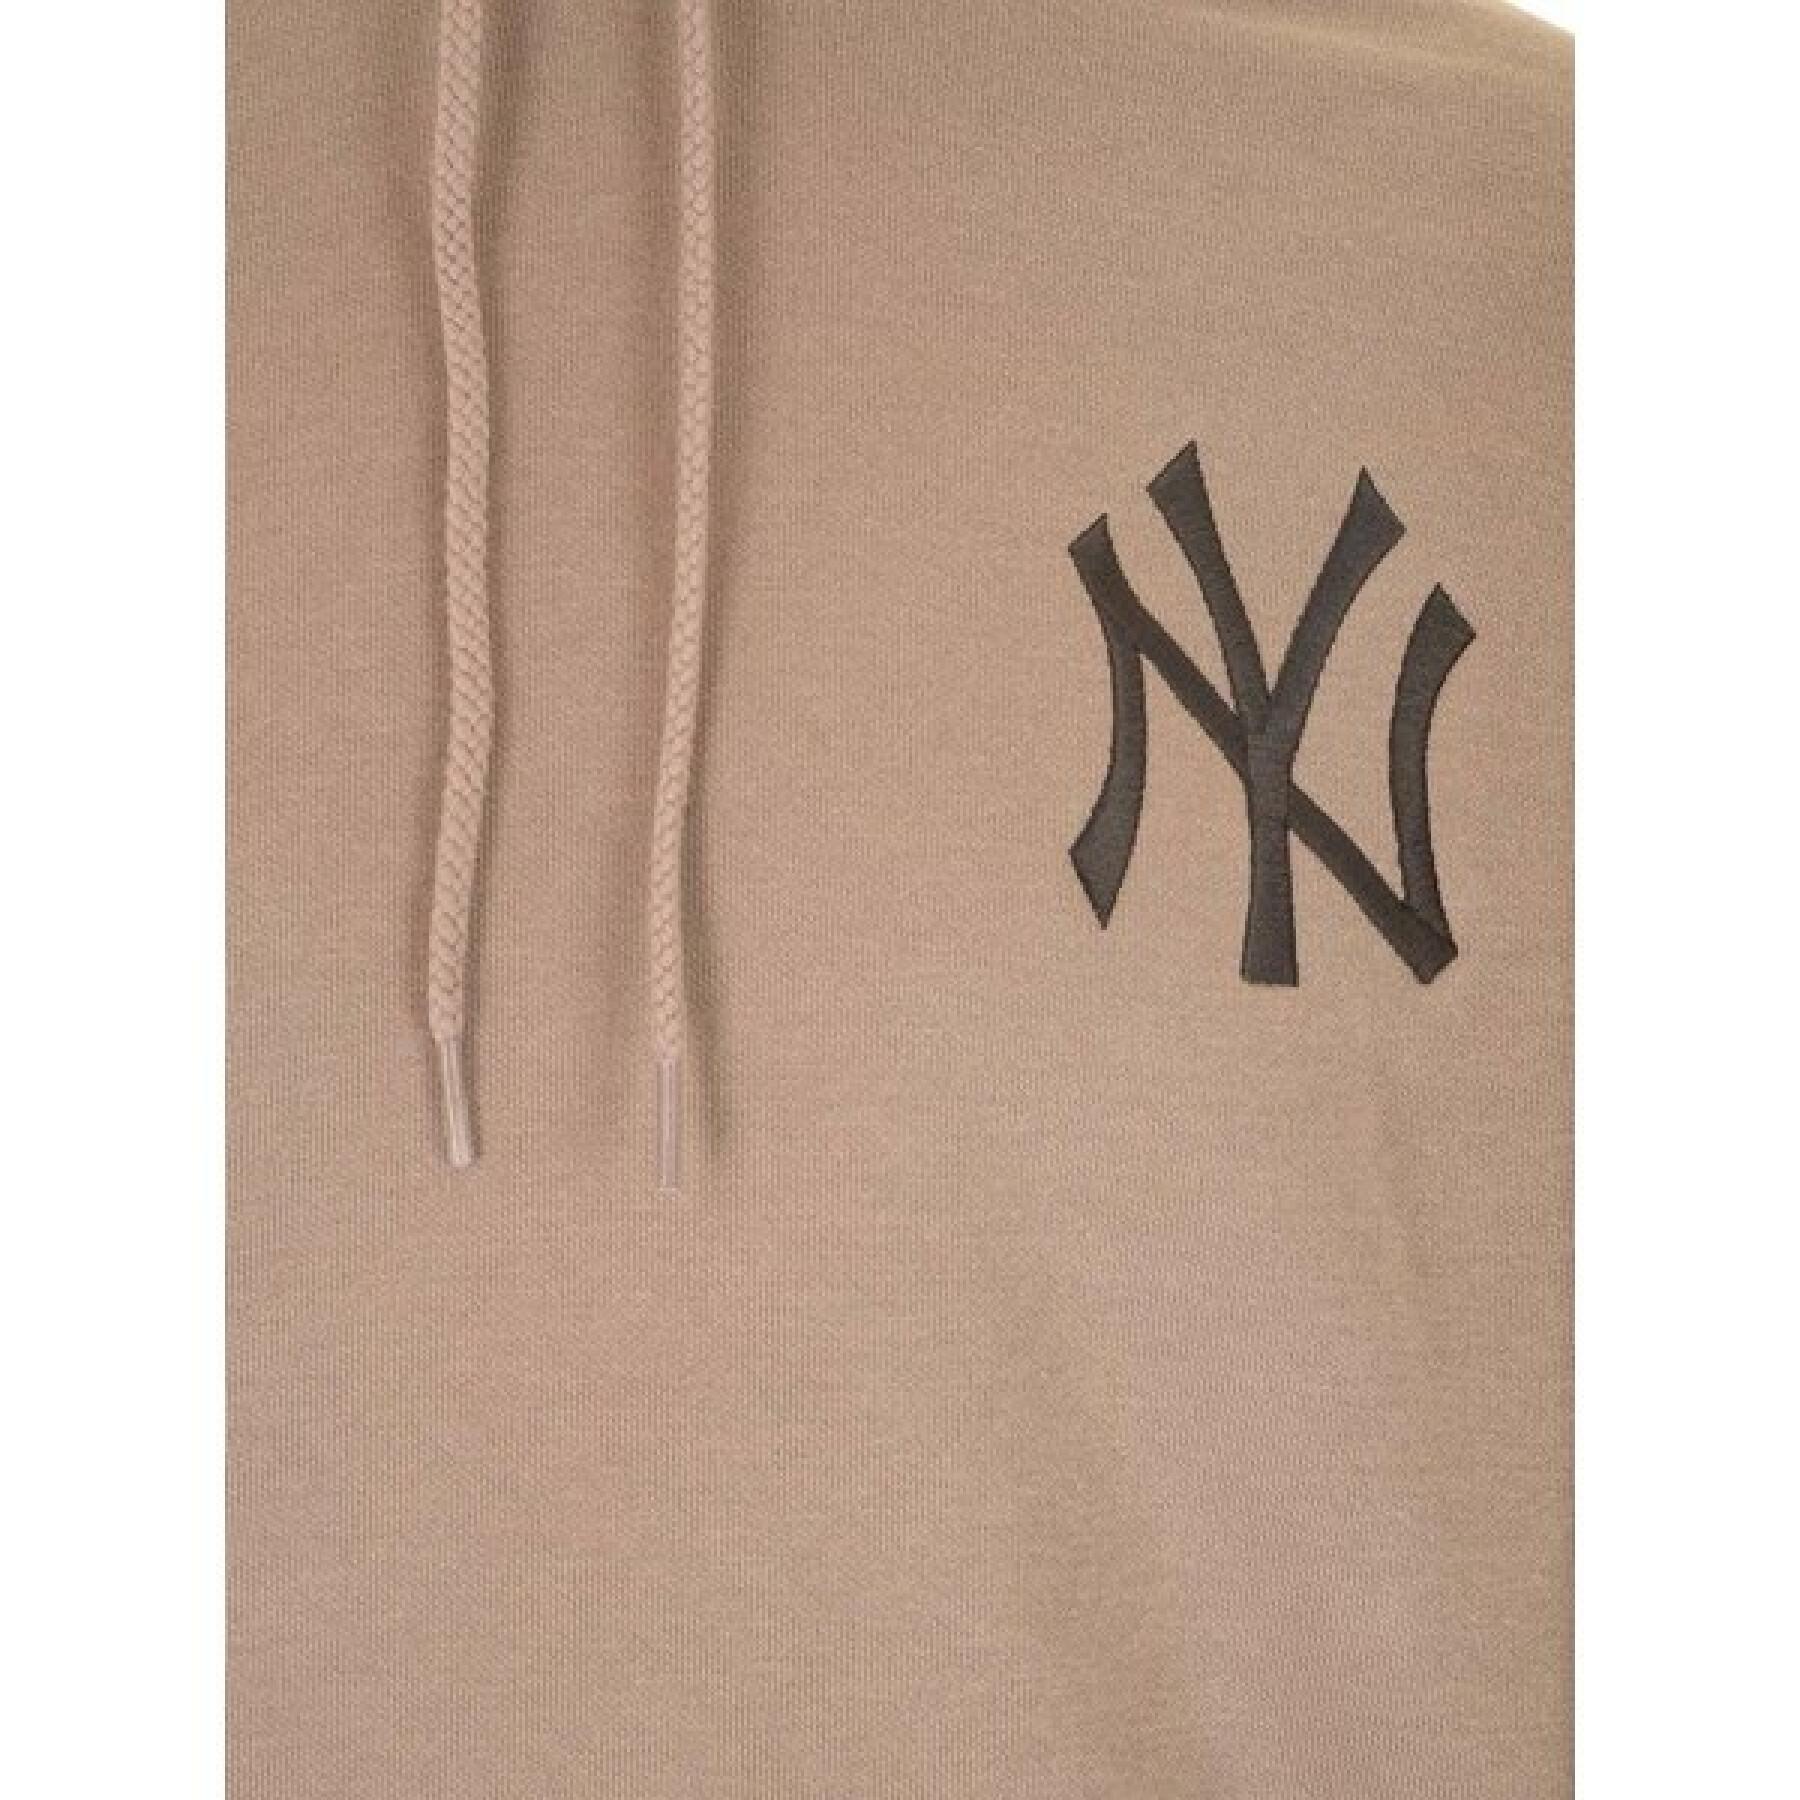 Sweatshirt New York Yankees MLB Emb Logo Oversized